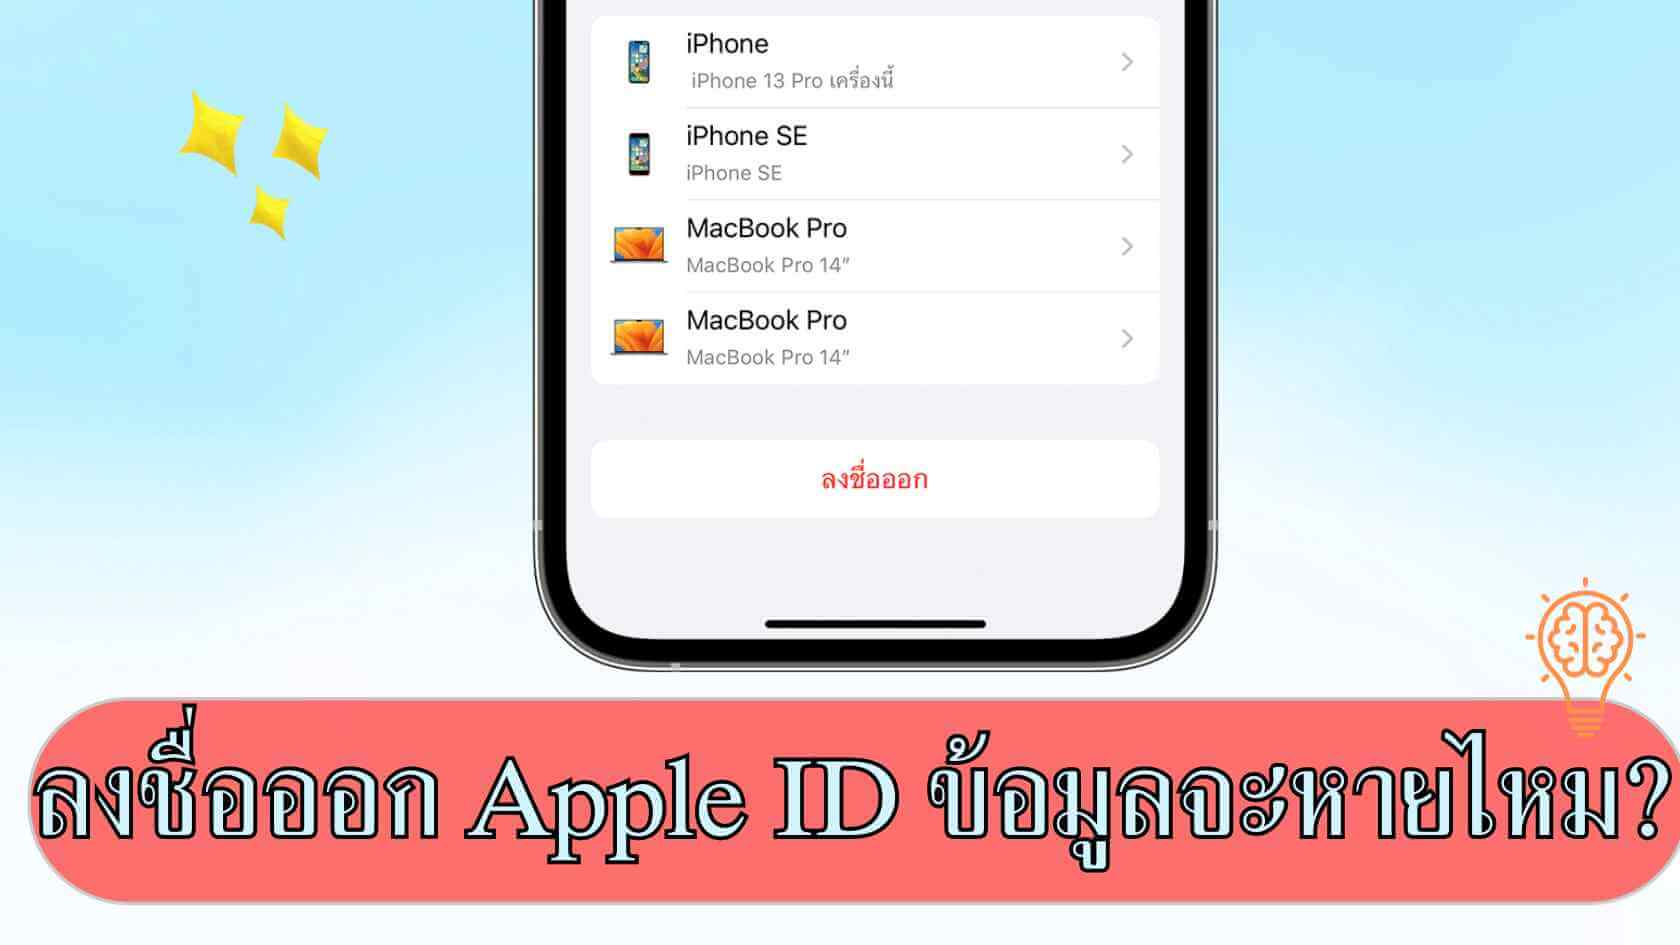 [แนะนำ] ลงชื่อออก Apple ID ข้อมูลจะหายไหม? มาดูวิธีออกจาก Apple ID ที่ถูกต้อง